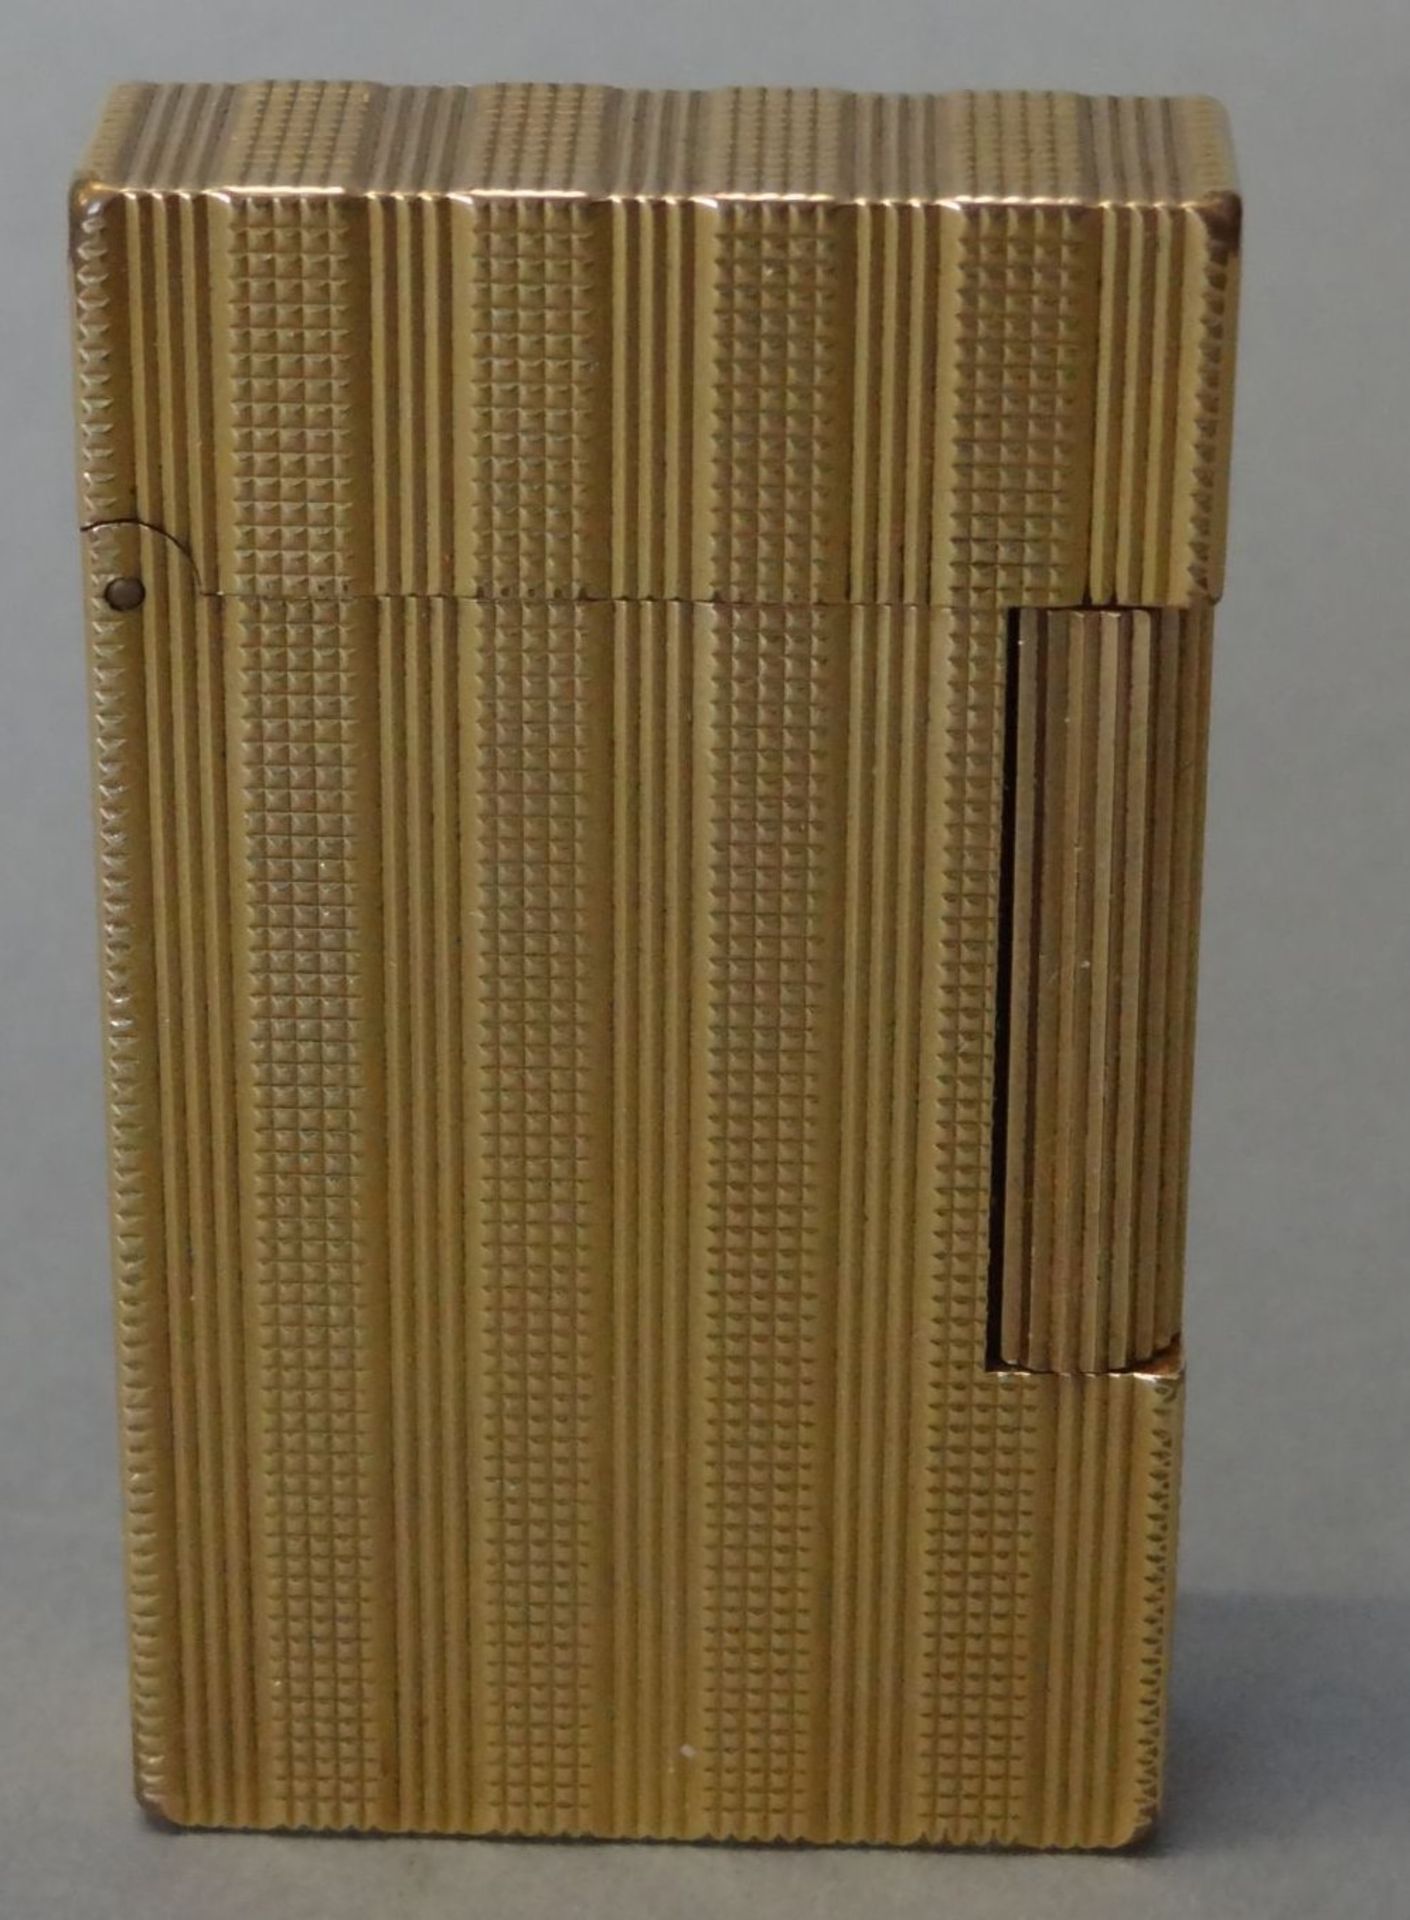 gr. Dupont Feuerzeug, vergoldet, funktionstüchtig, Gebrauchsspuren H-6 cm, B-3,5 cm, mit Gravur "